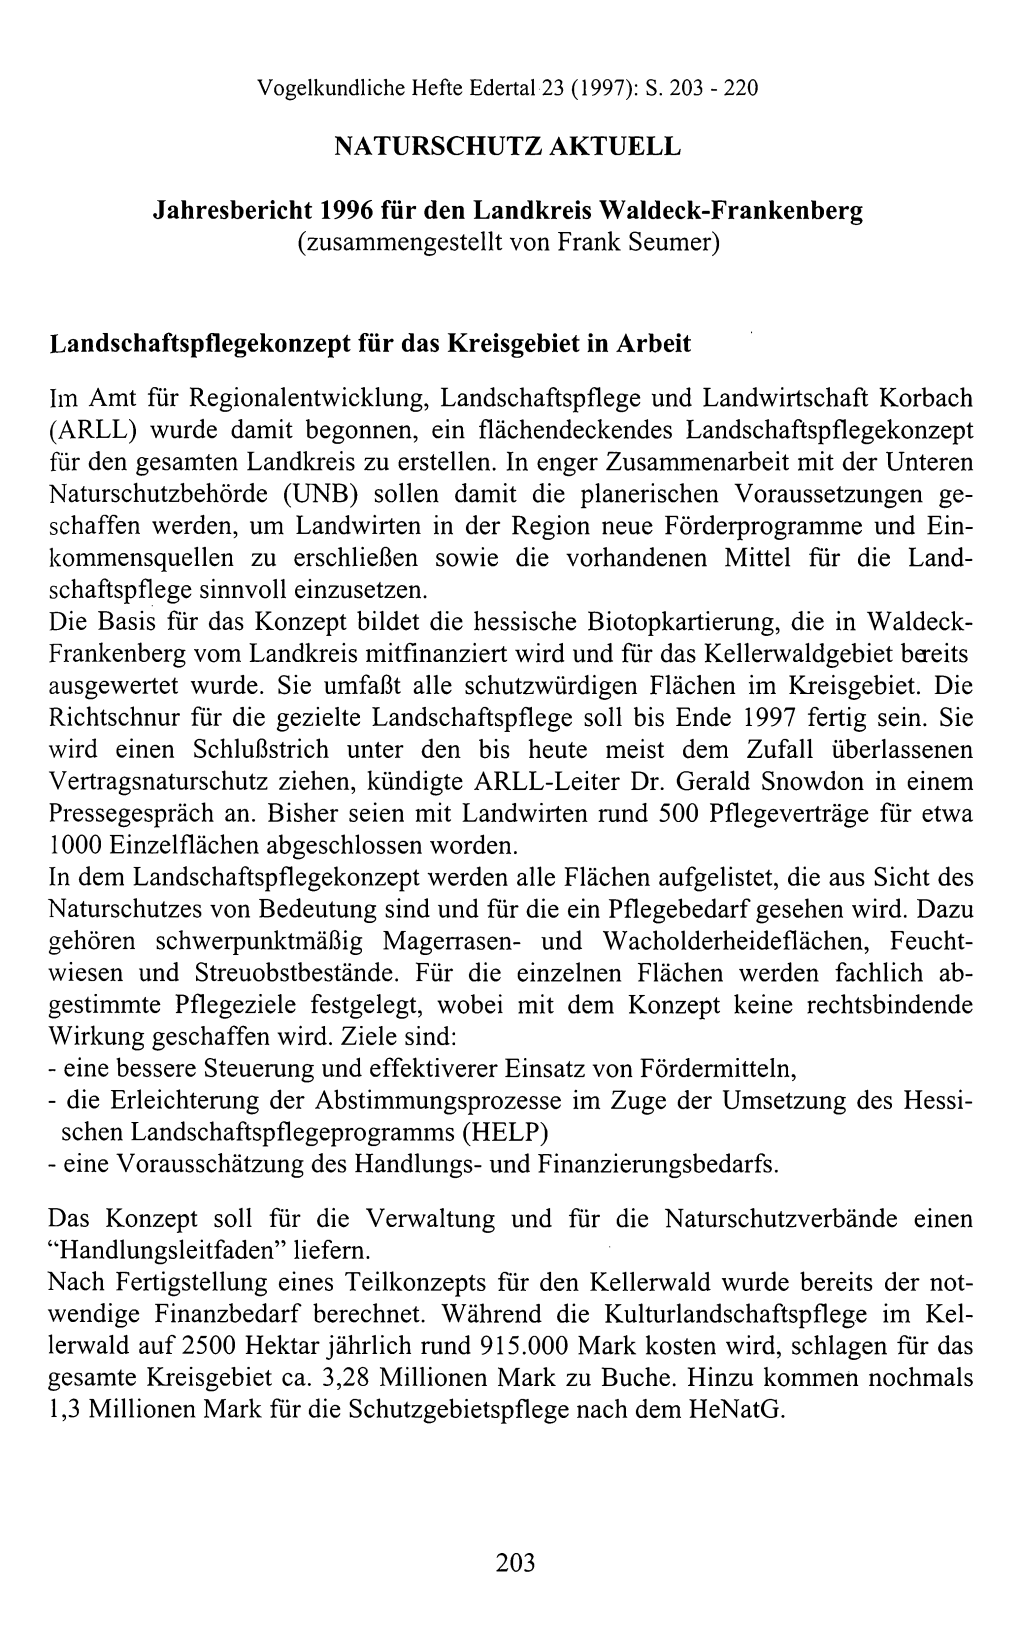 NATURSCHUTZ AKTUELL Jahresbericht 1996 Für Den Landkreis Waldeck-Frankenberg